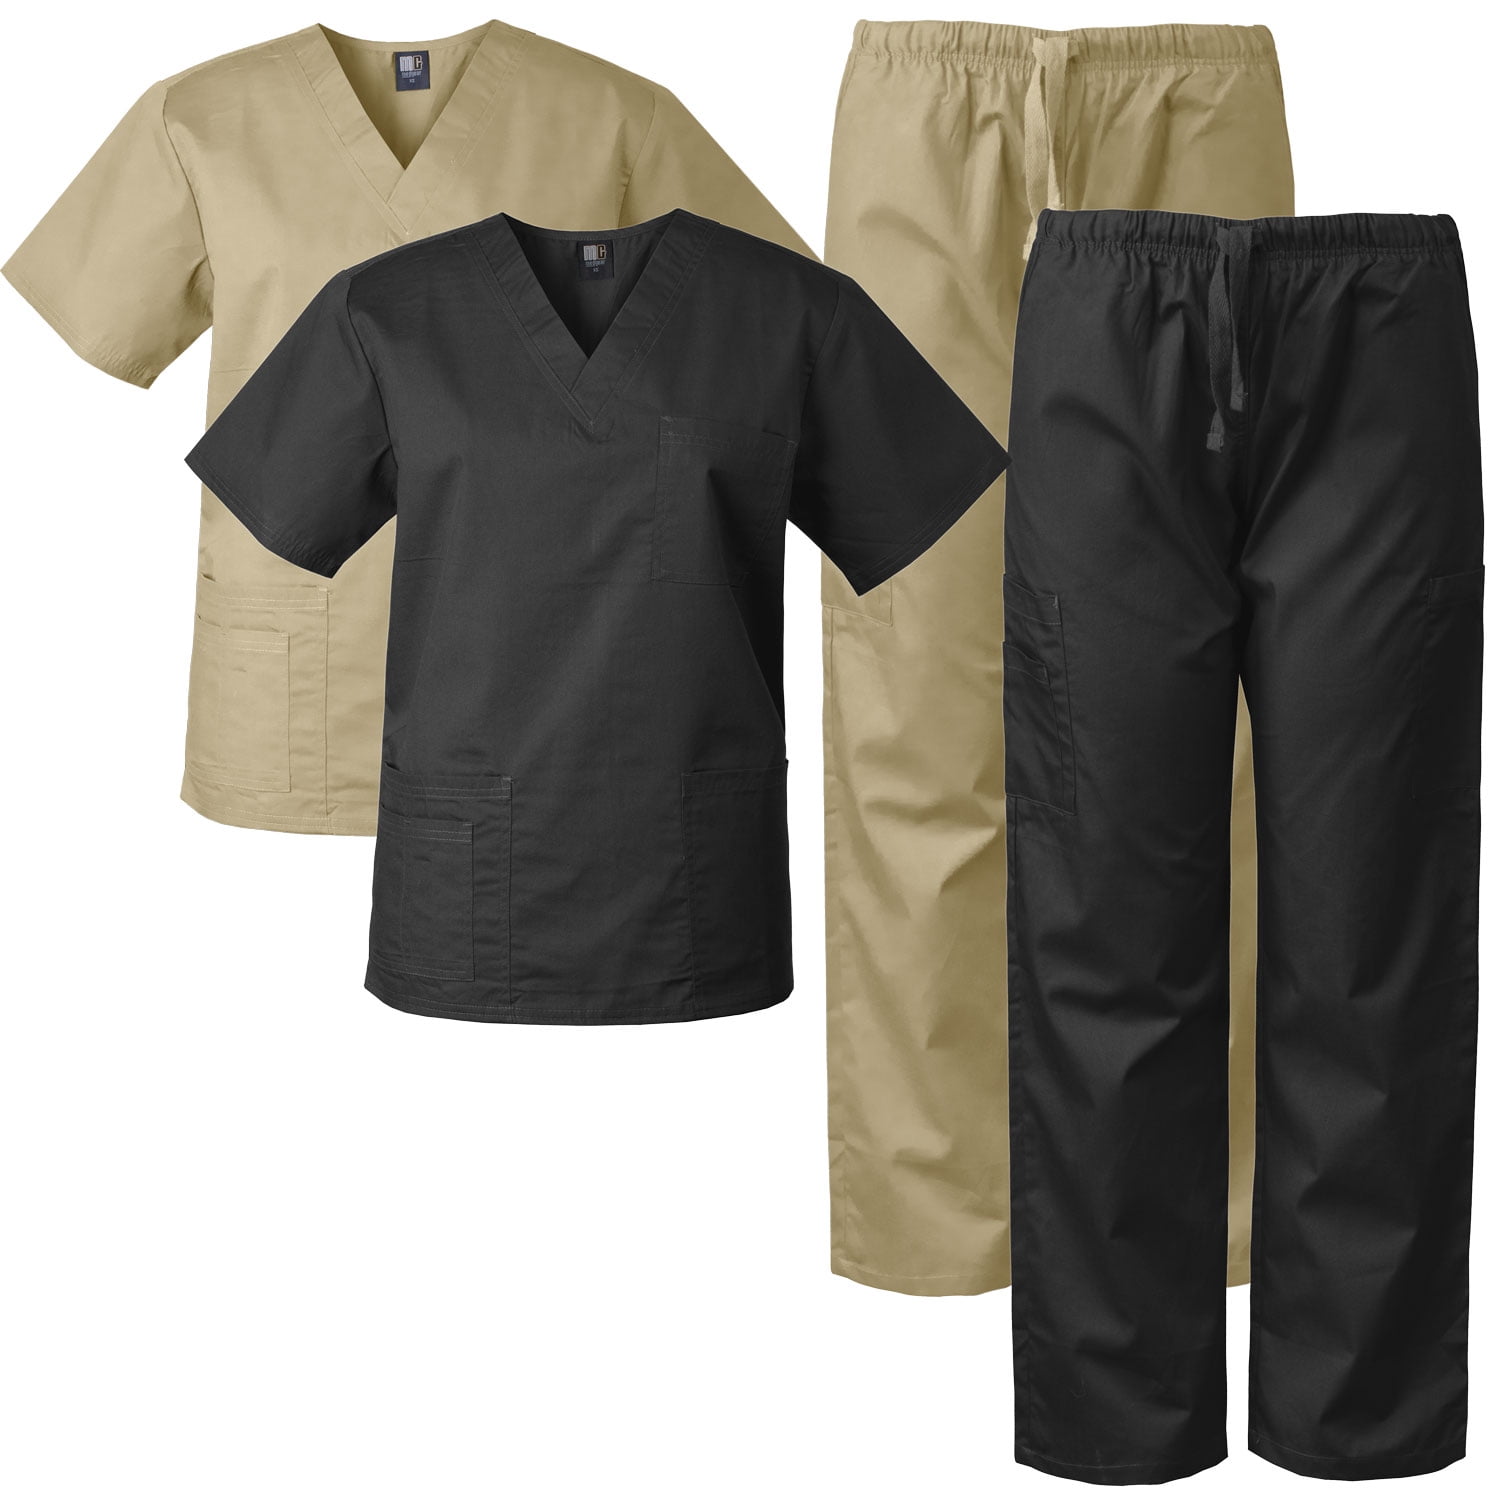 Medgear Scrubs Medical Uniform for Men and Women Eversoft Scrubs Set Top & Pants 